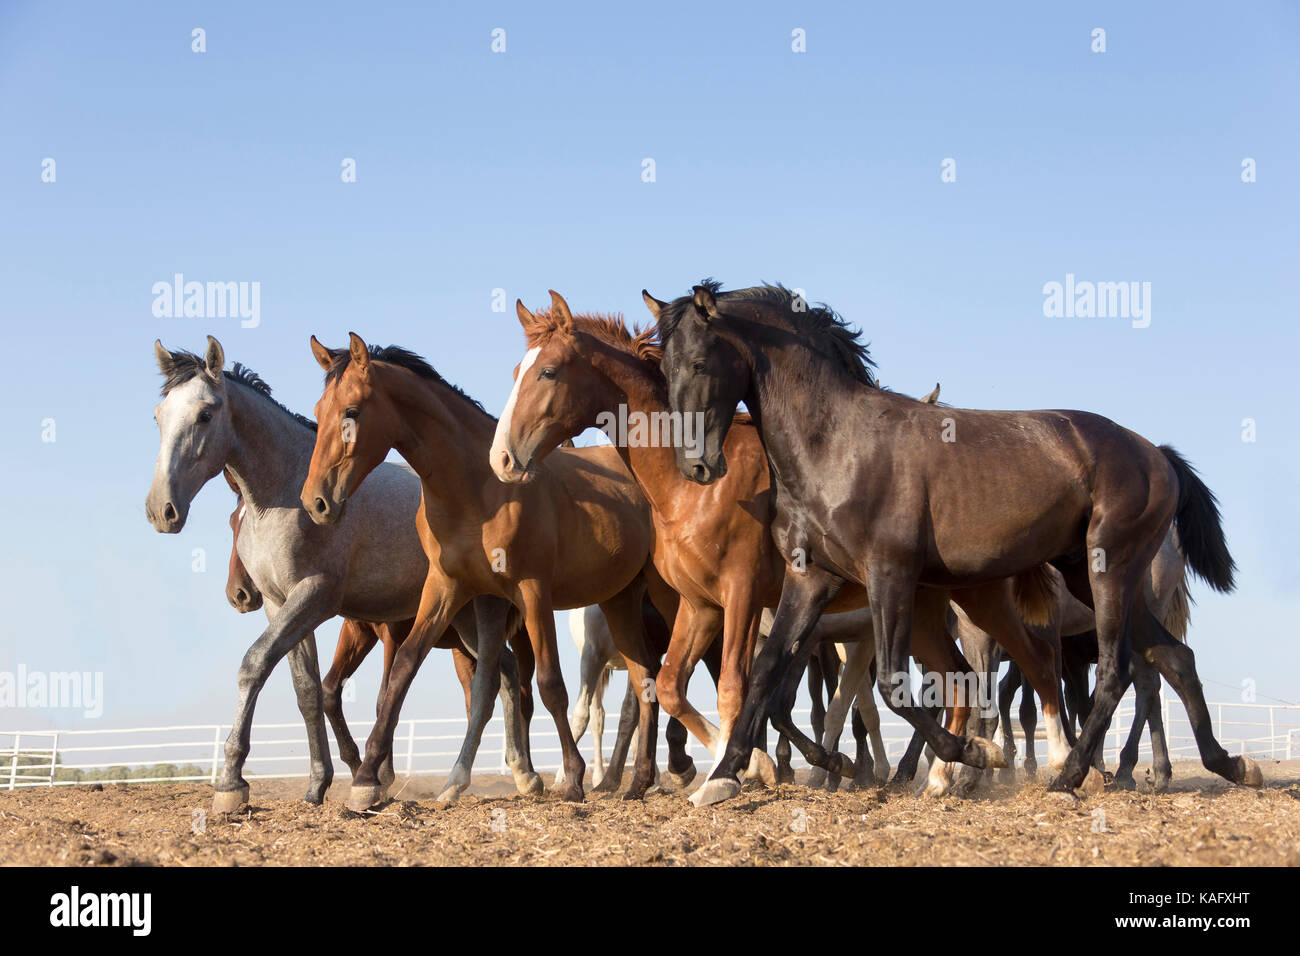 Reine Spanische Pferd, Andalusische. Herde von Jugendlichen Hengste Trab auf trockenem Boden. Spanien Stockfoto